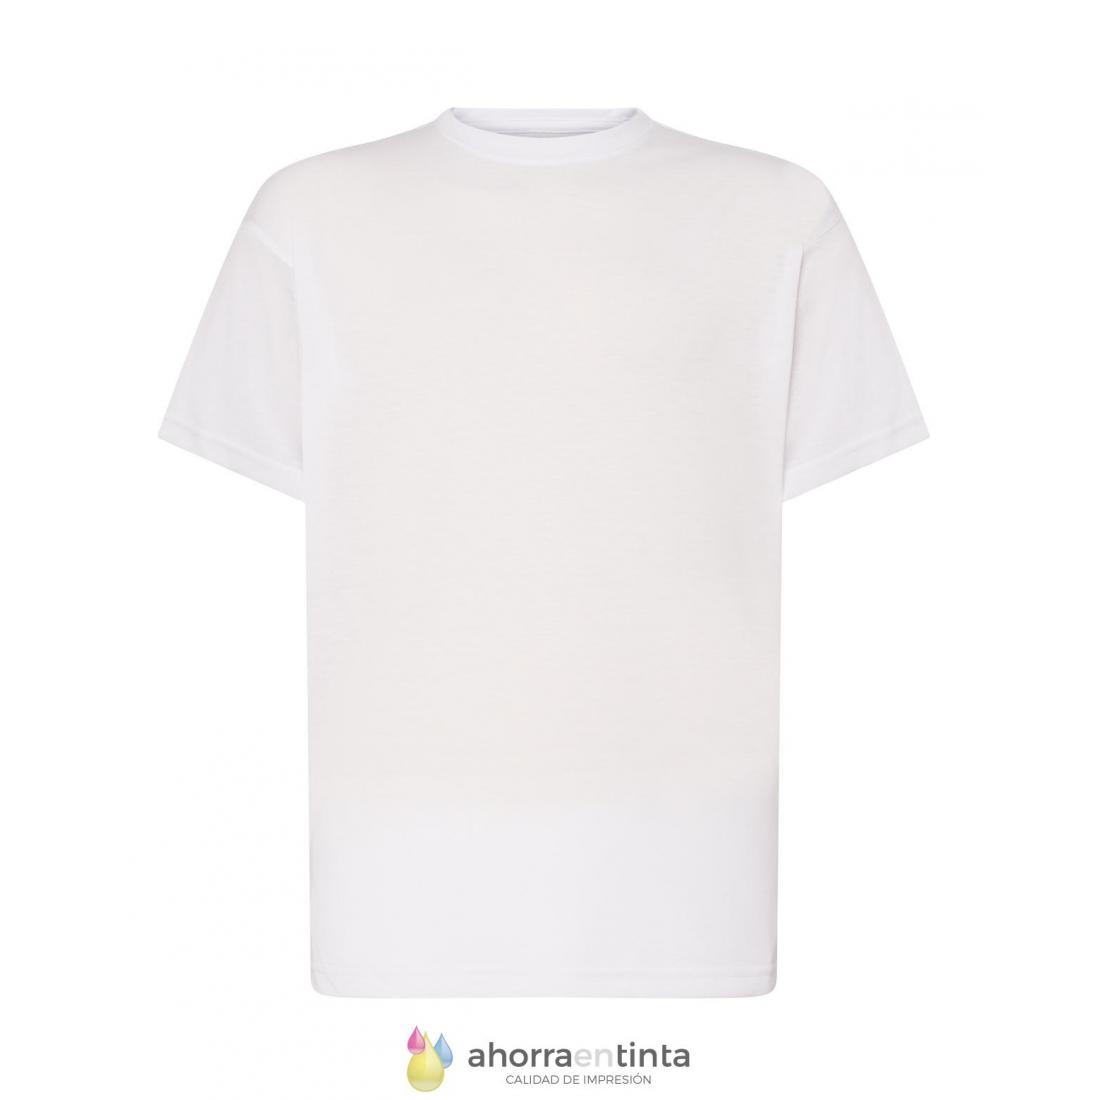 Estas son las mejores camisetas blancas para hombre